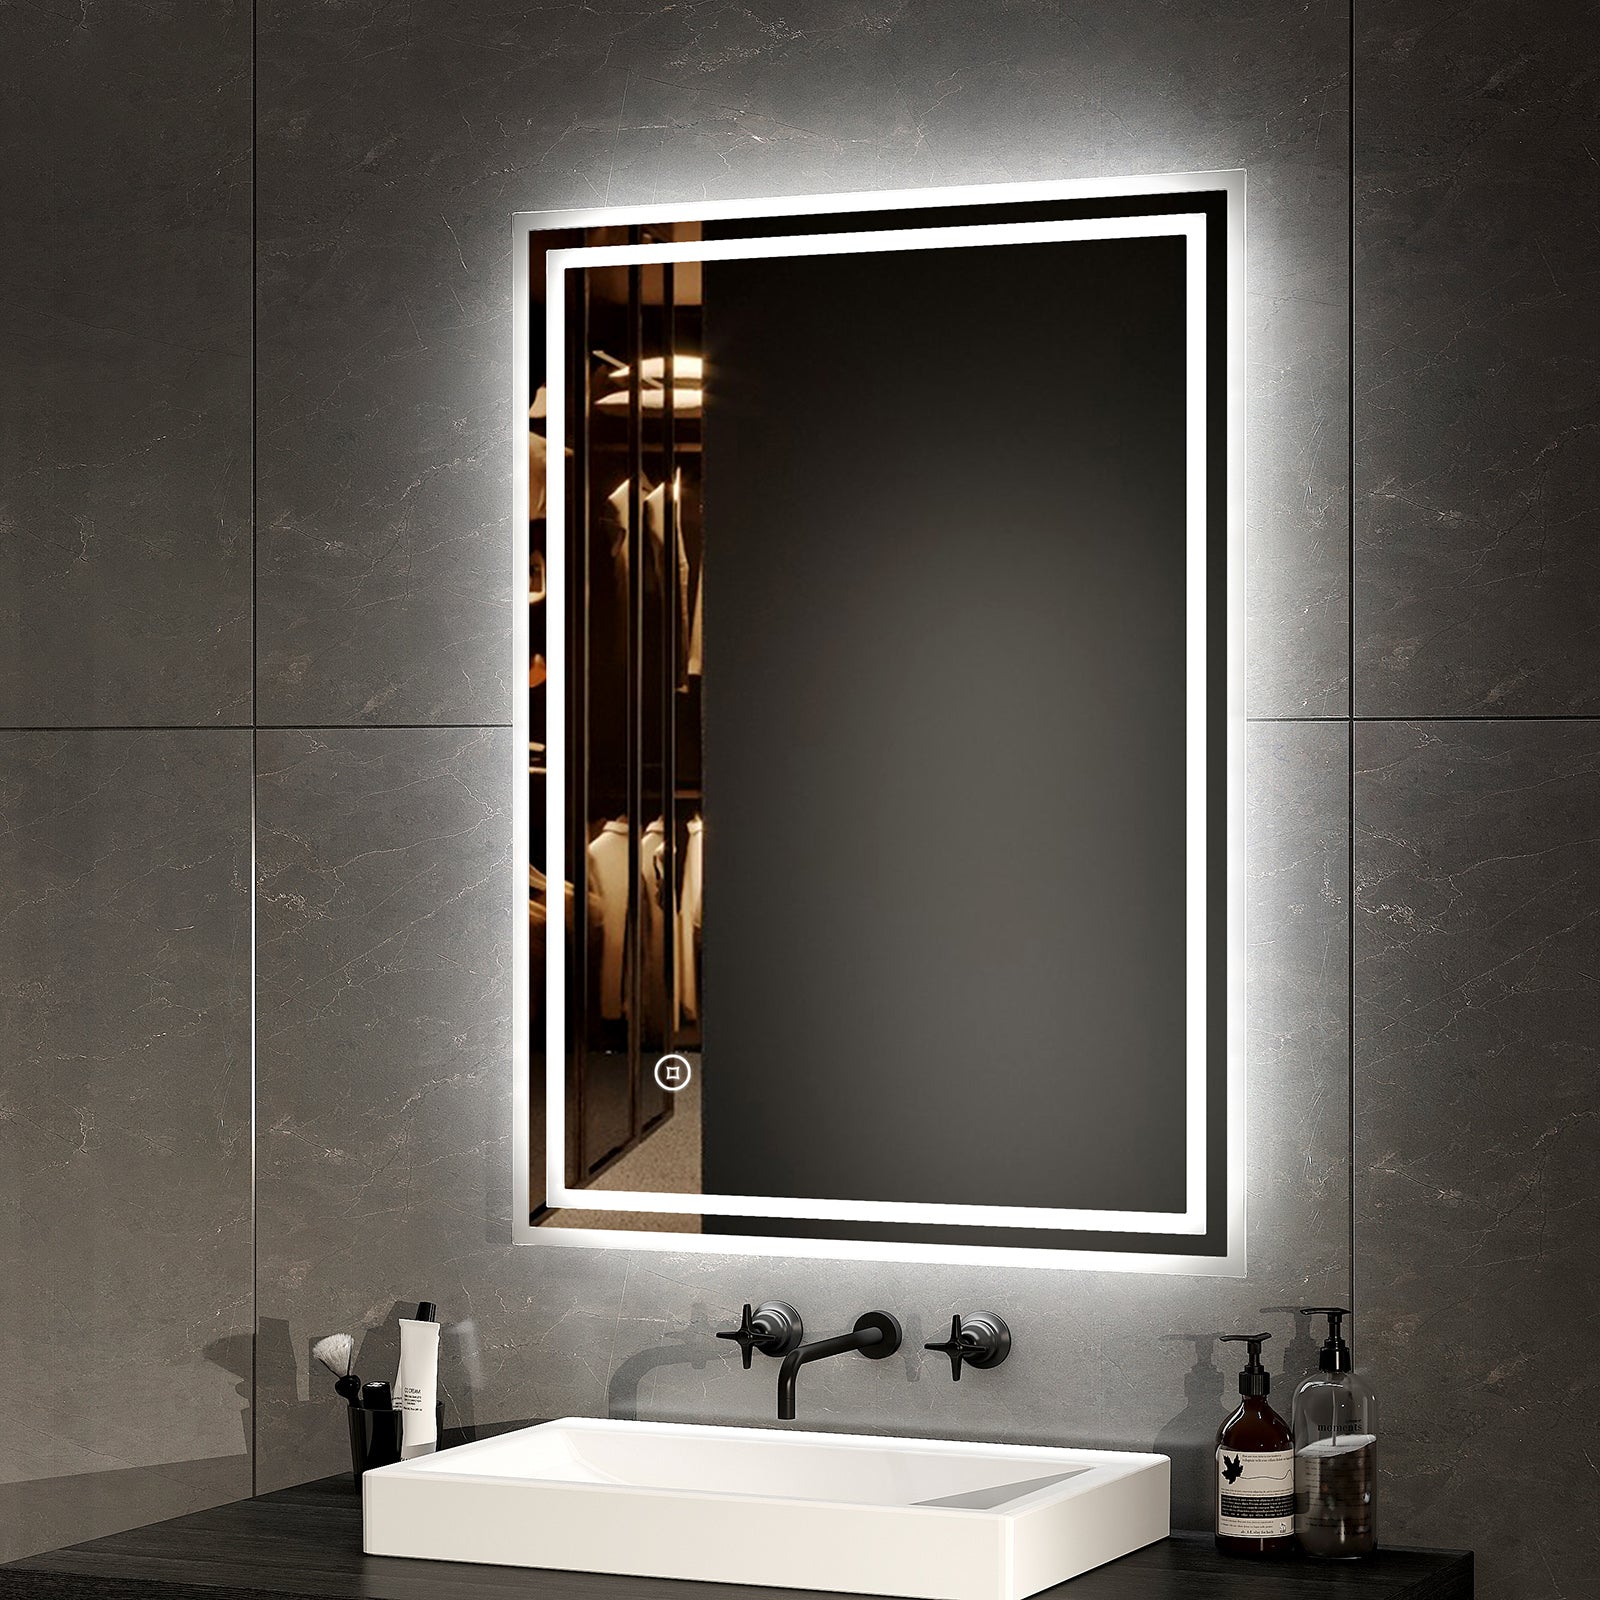 EMKE Badezimmer Spiegel mit LED Beleuchtung – Touchschalter – Dimmung – 3 Lichtfarben – Beschlagfrei – 60 x 80 cm